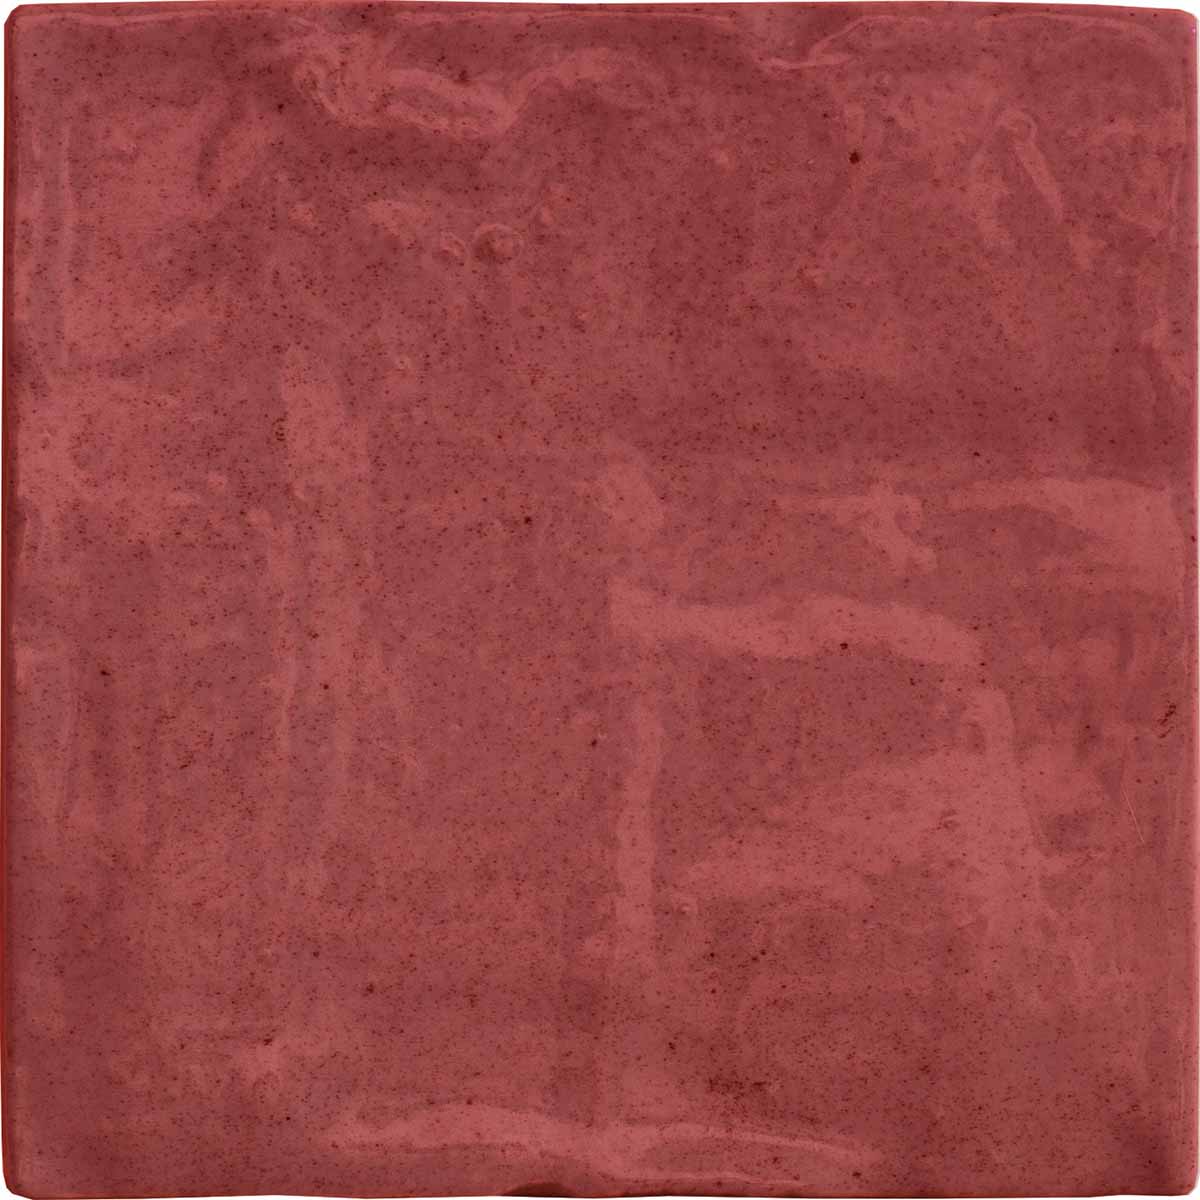 Riad Red Decor Wall Tile 10x10cm Gloss